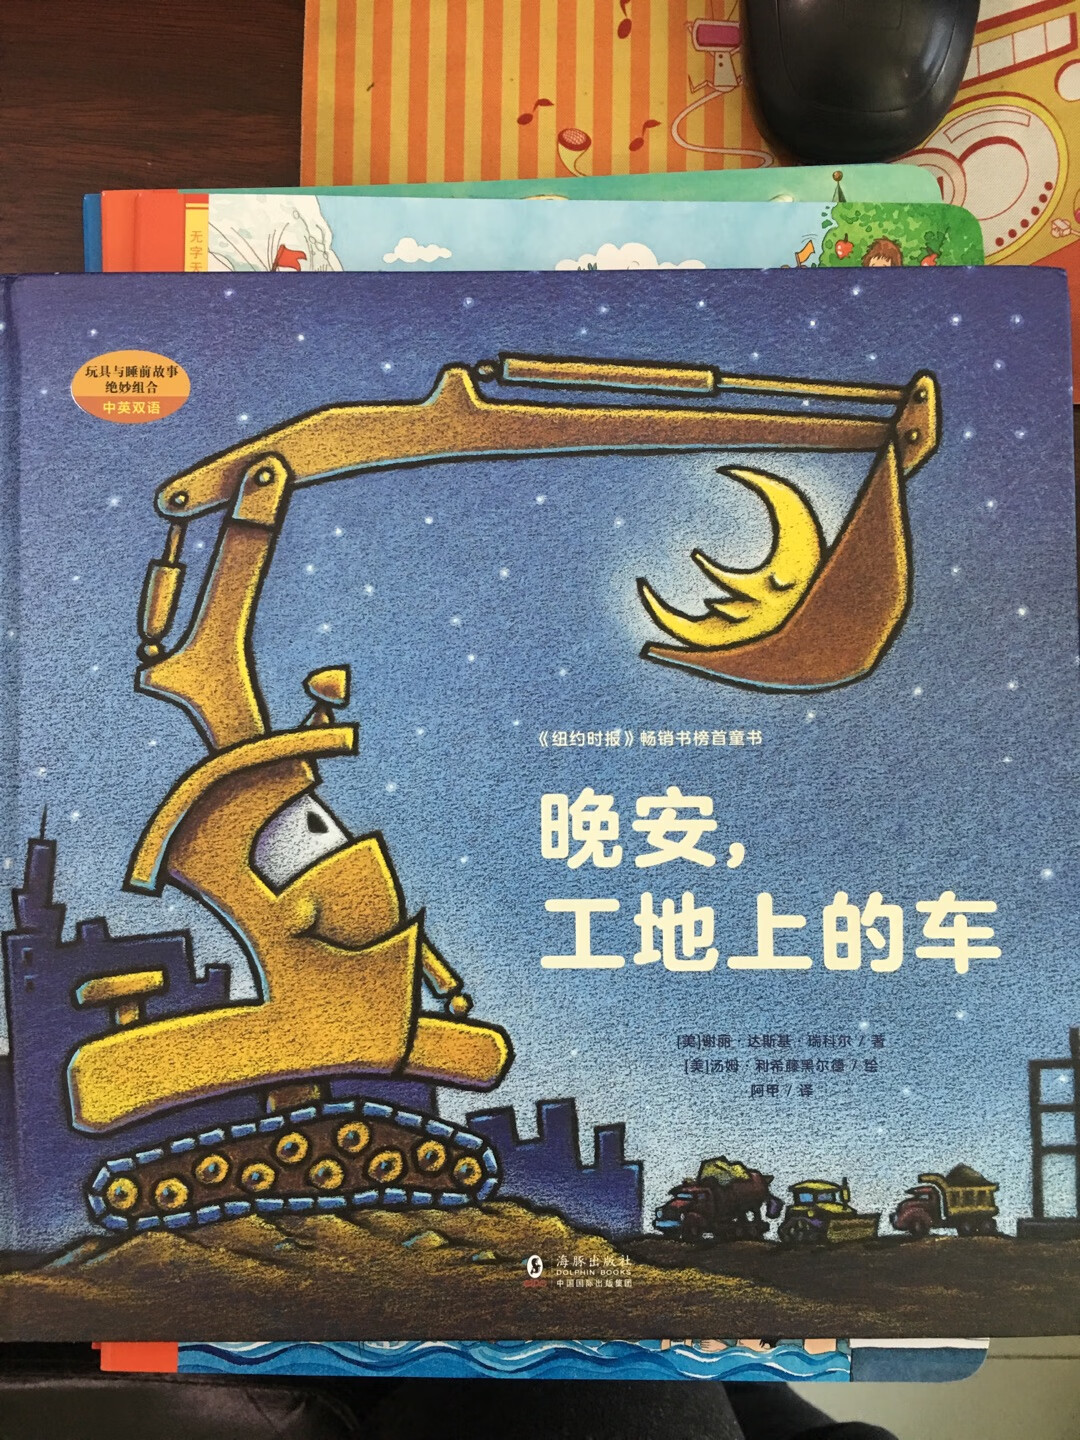 看过这个英文版，很有意思，特意买的中文版方便老人在家给娃讲，很有童趣。